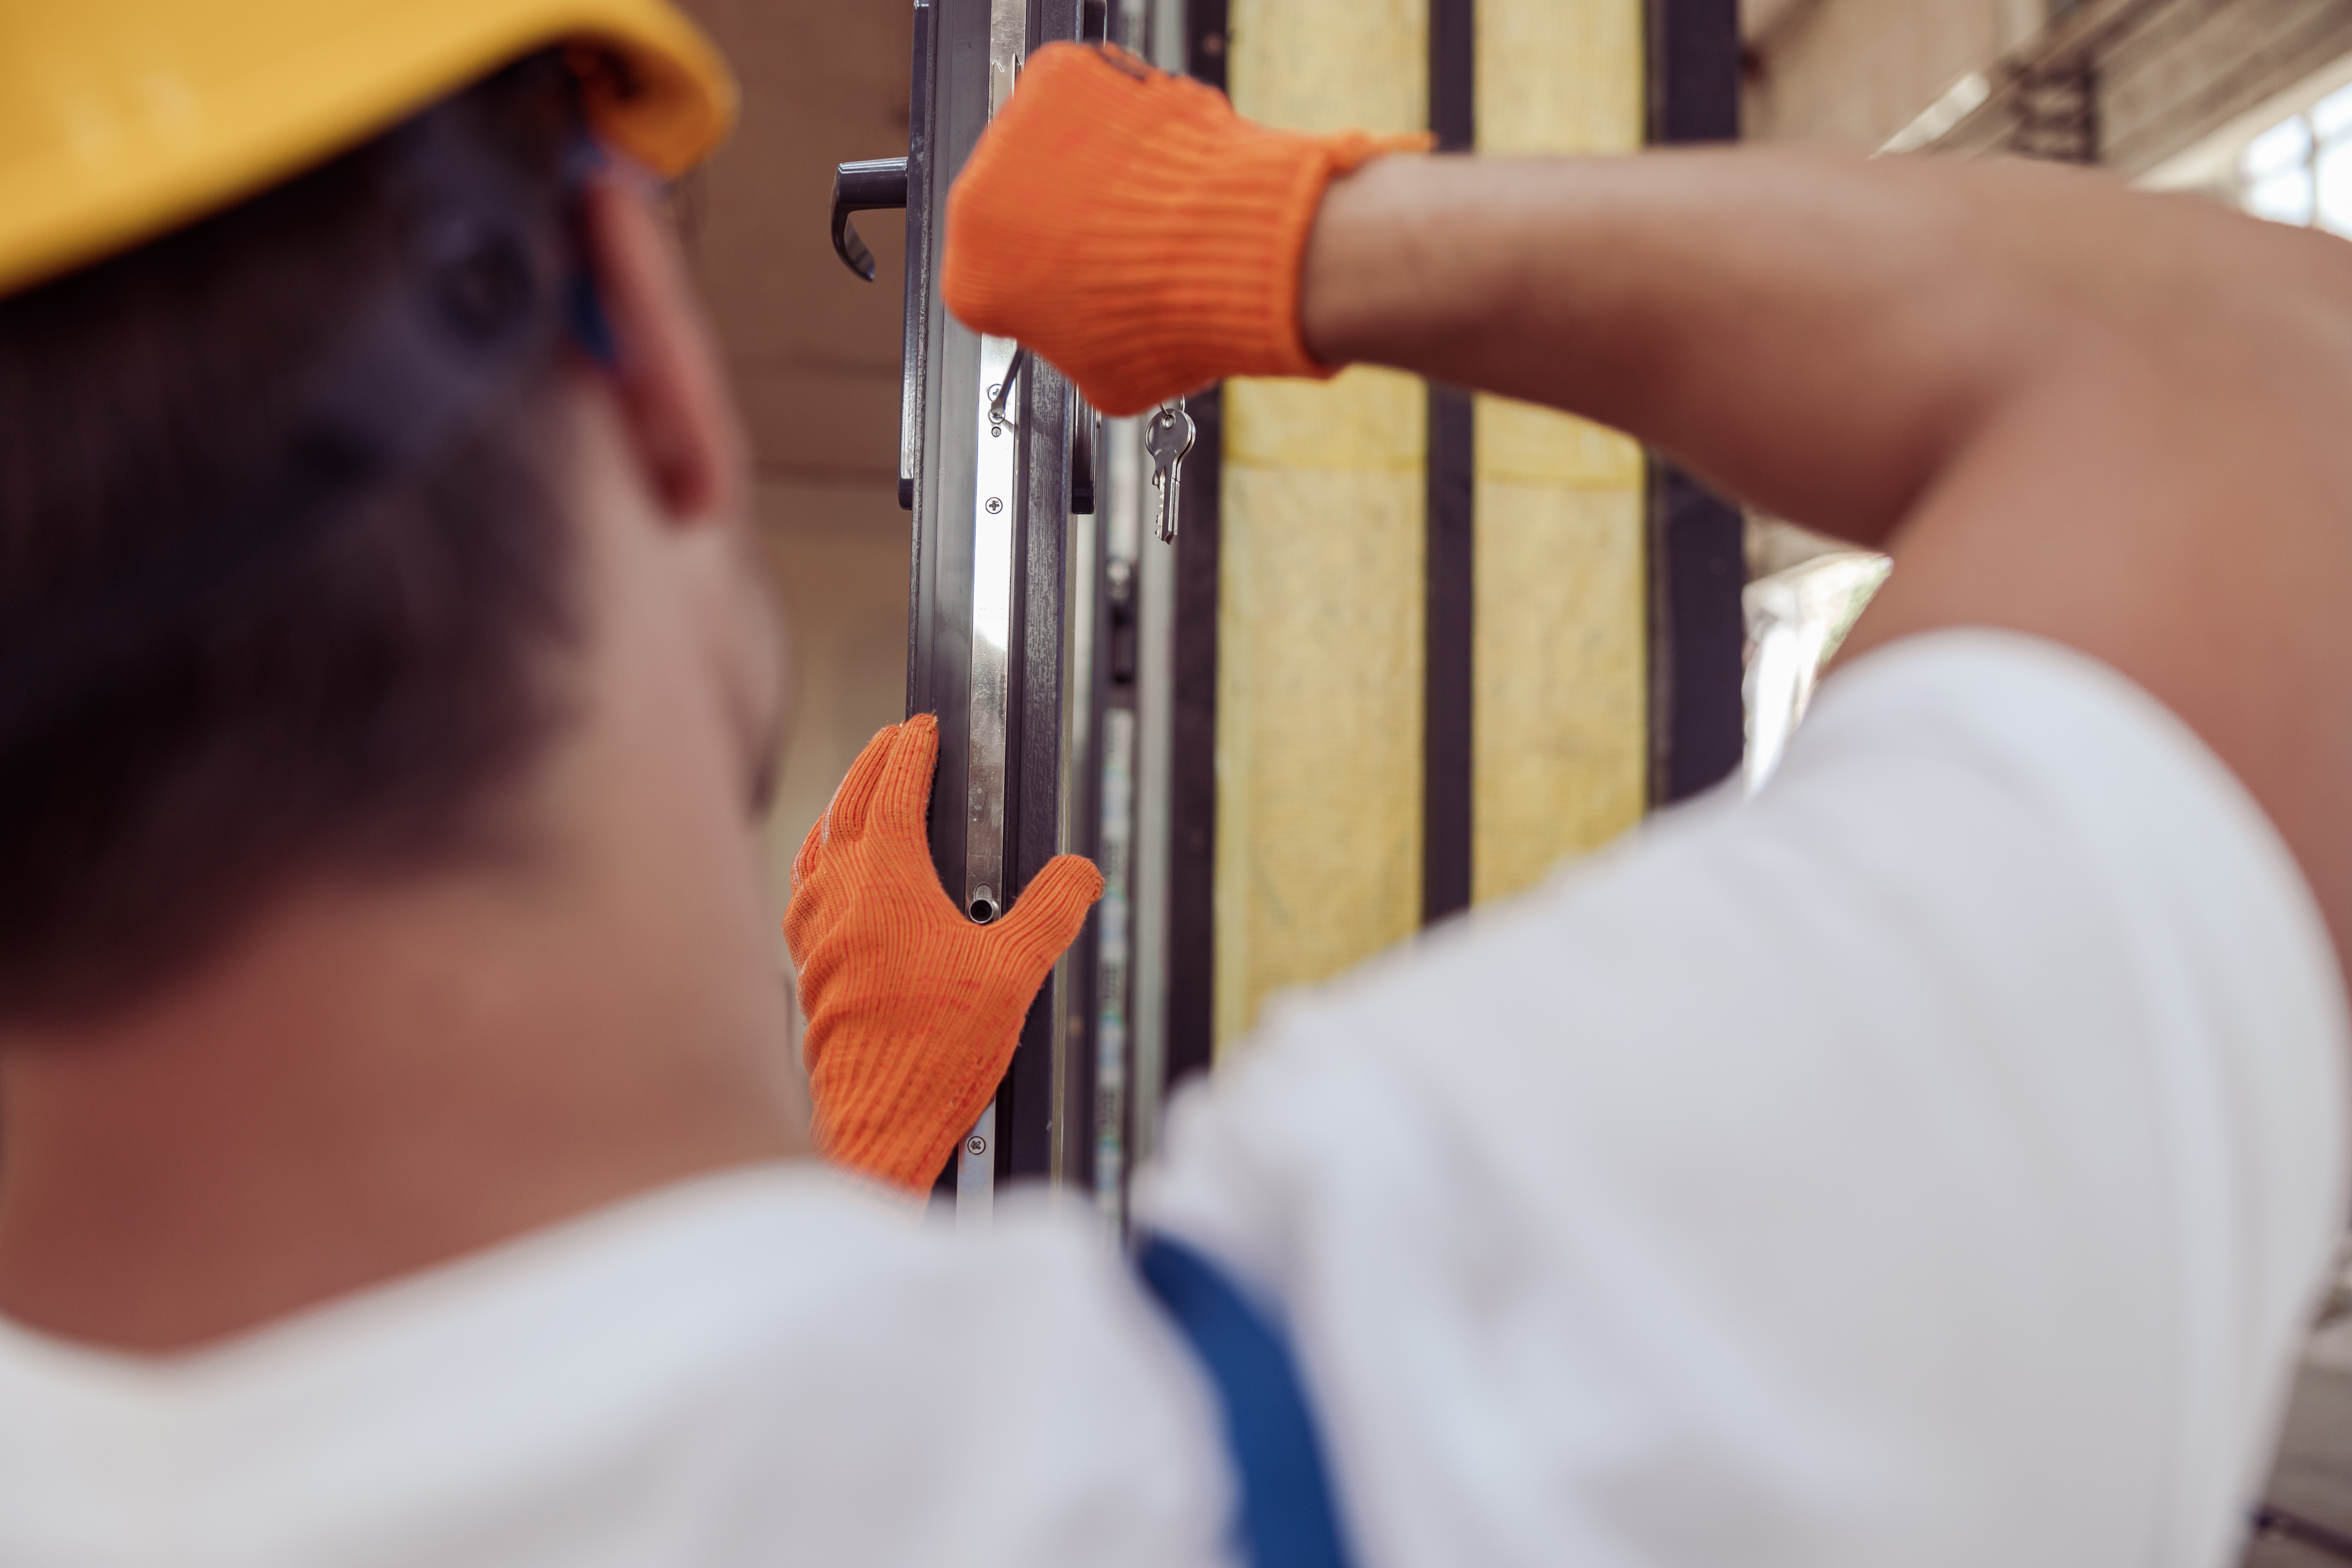 male-worker-repairing-door-in-building-under-const-2021-12-09-21-20-34-utc.jpg